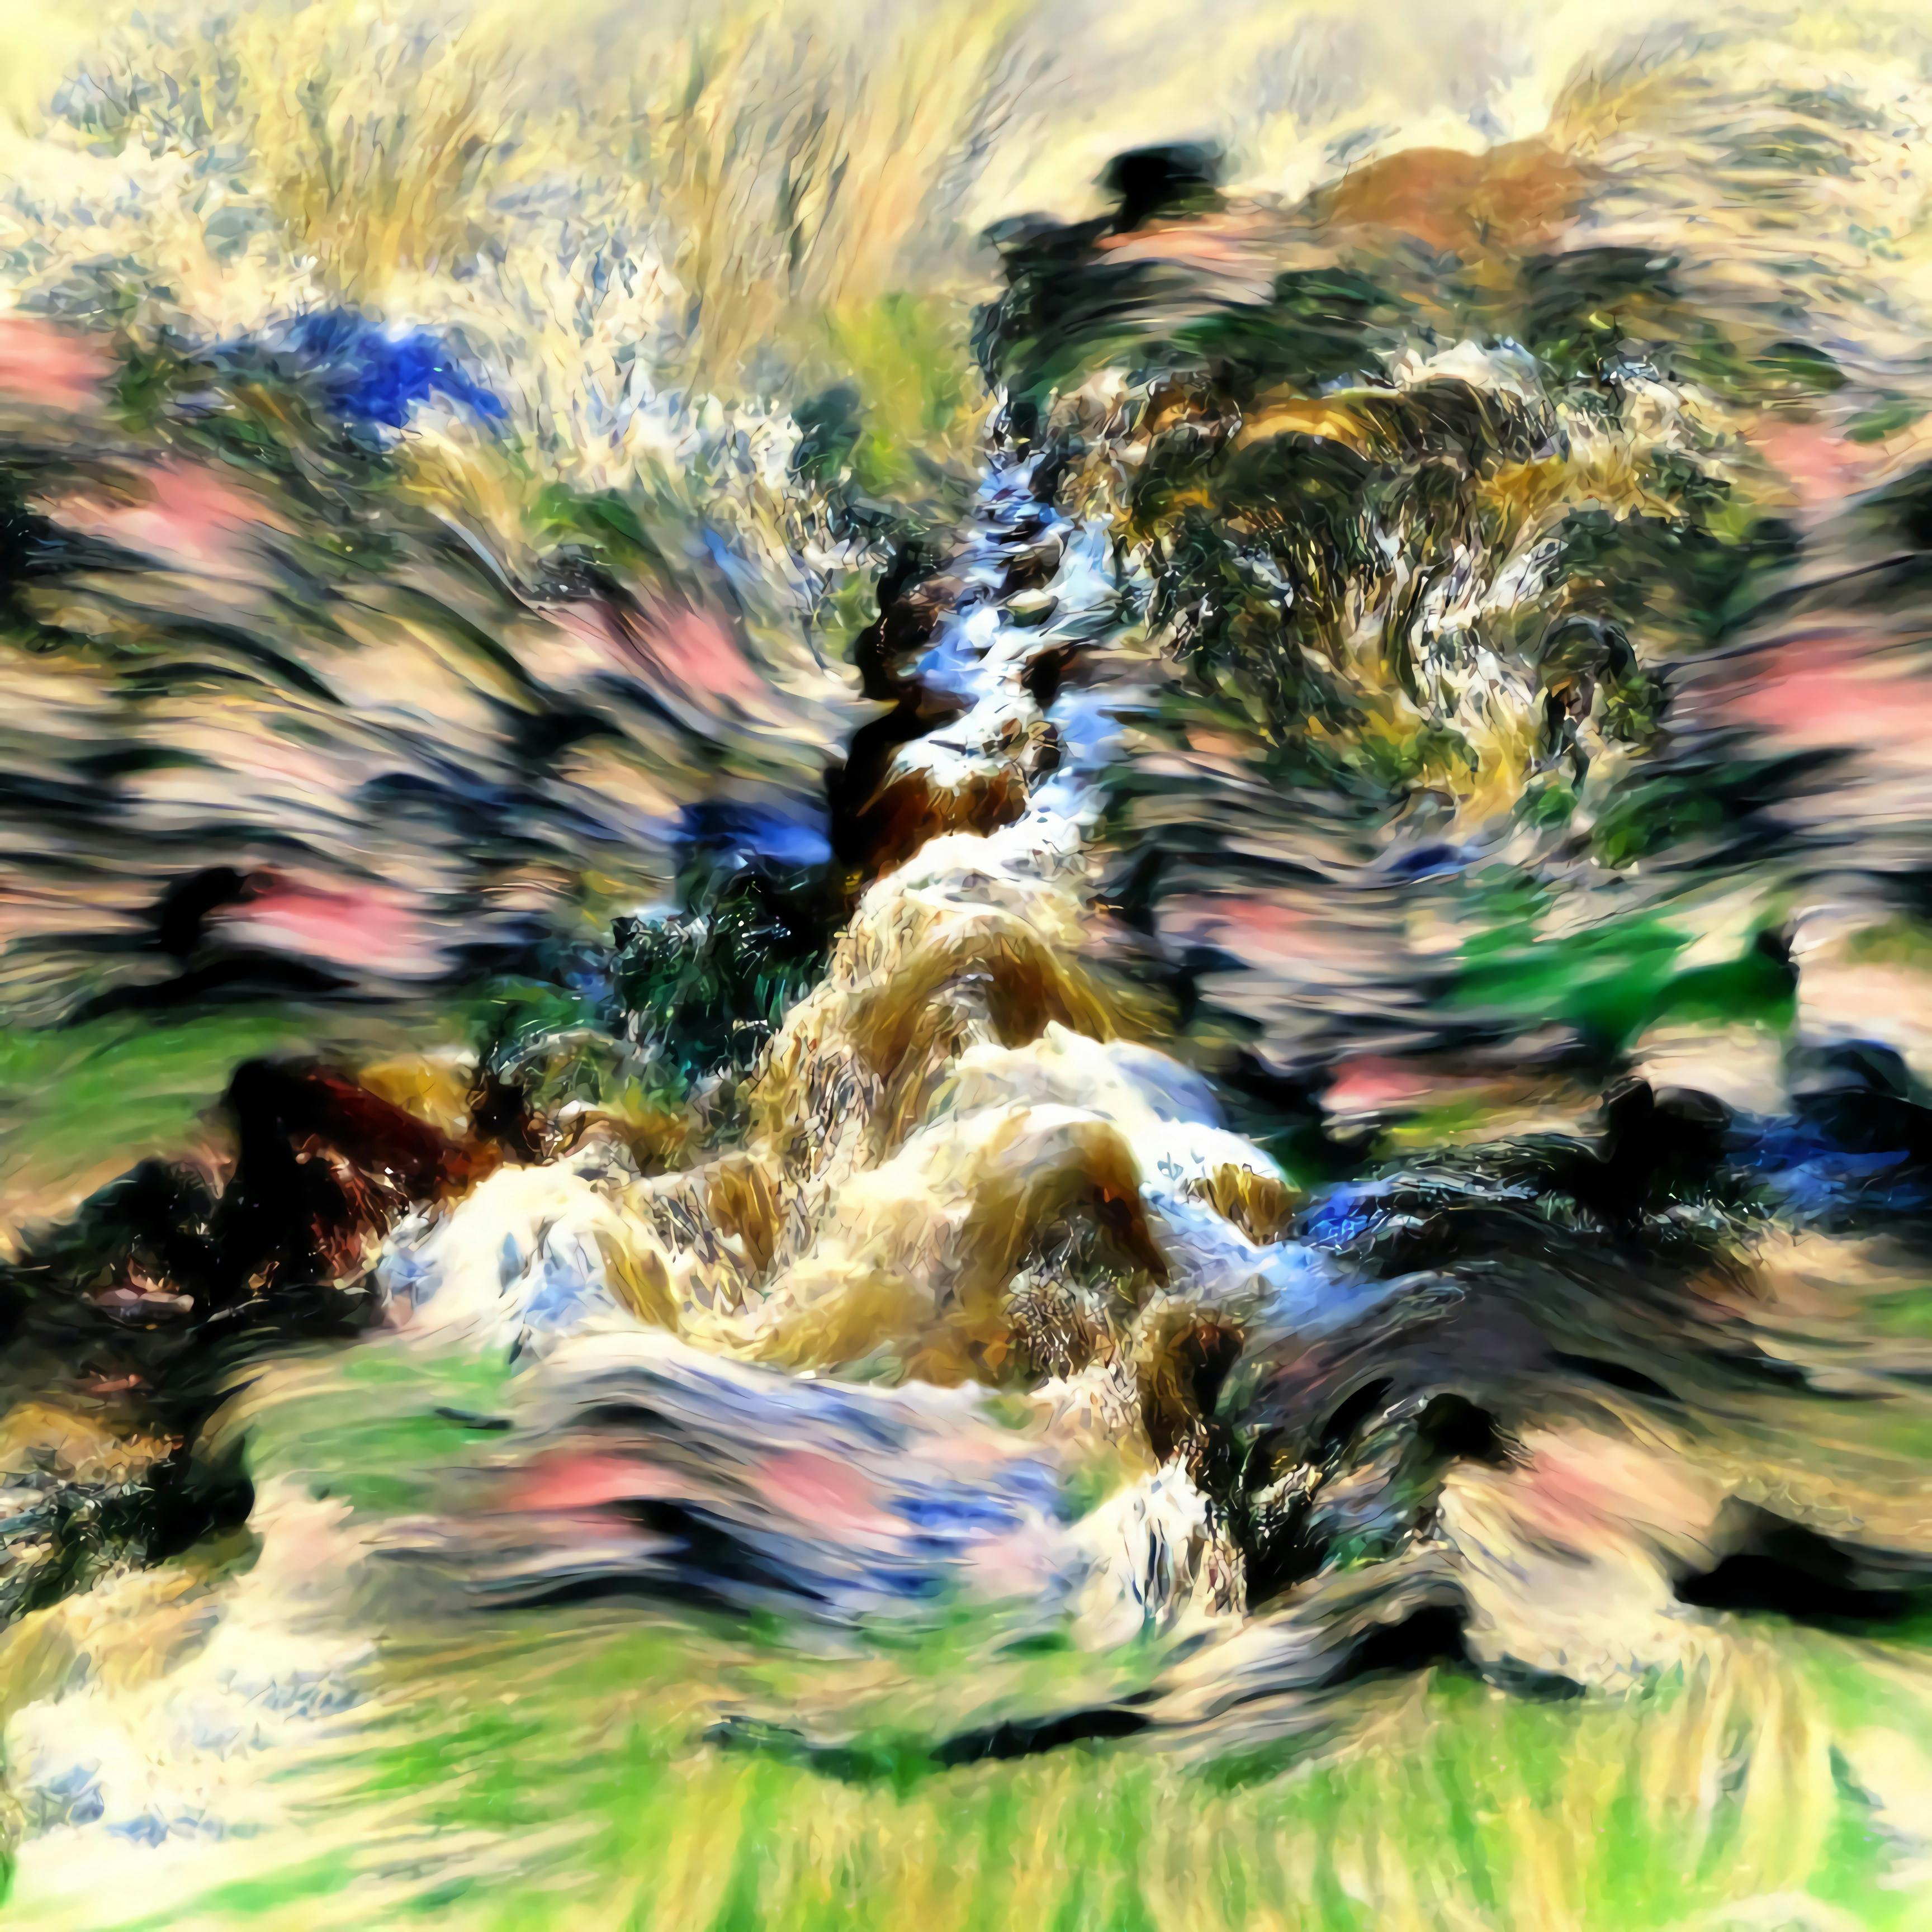  Peter Pink-Howitt, "Rushing through the vast astonishment", algo-art, 2021 CE